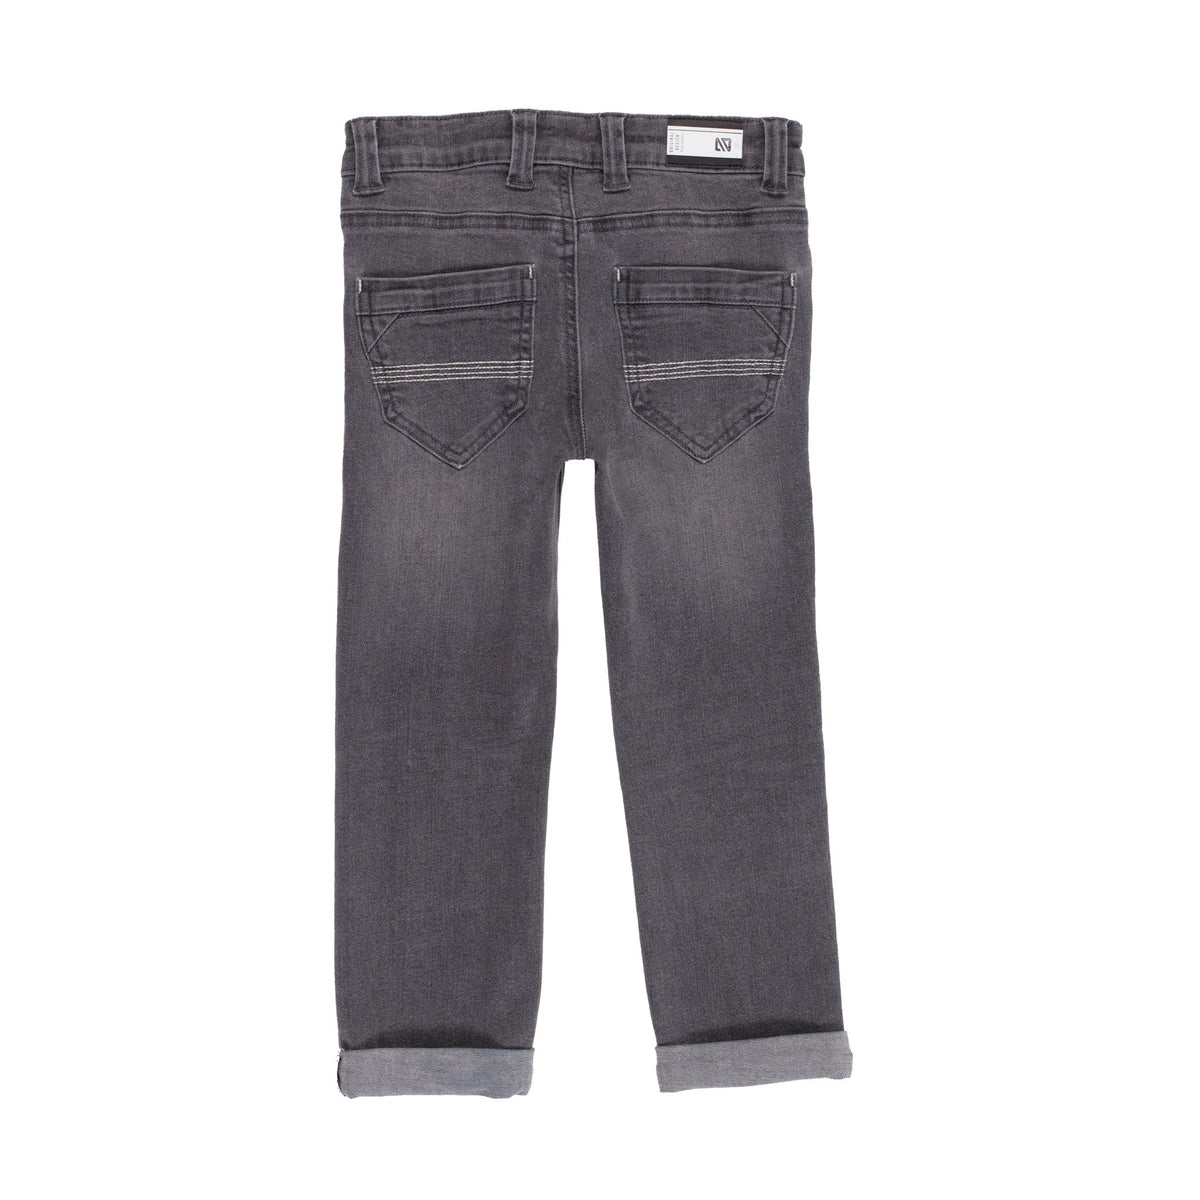 Jeans pour enfant garçon par Nanö | F2205-08 Denim gris | Boutique Flos, vêtements mode pour bébés et enfants